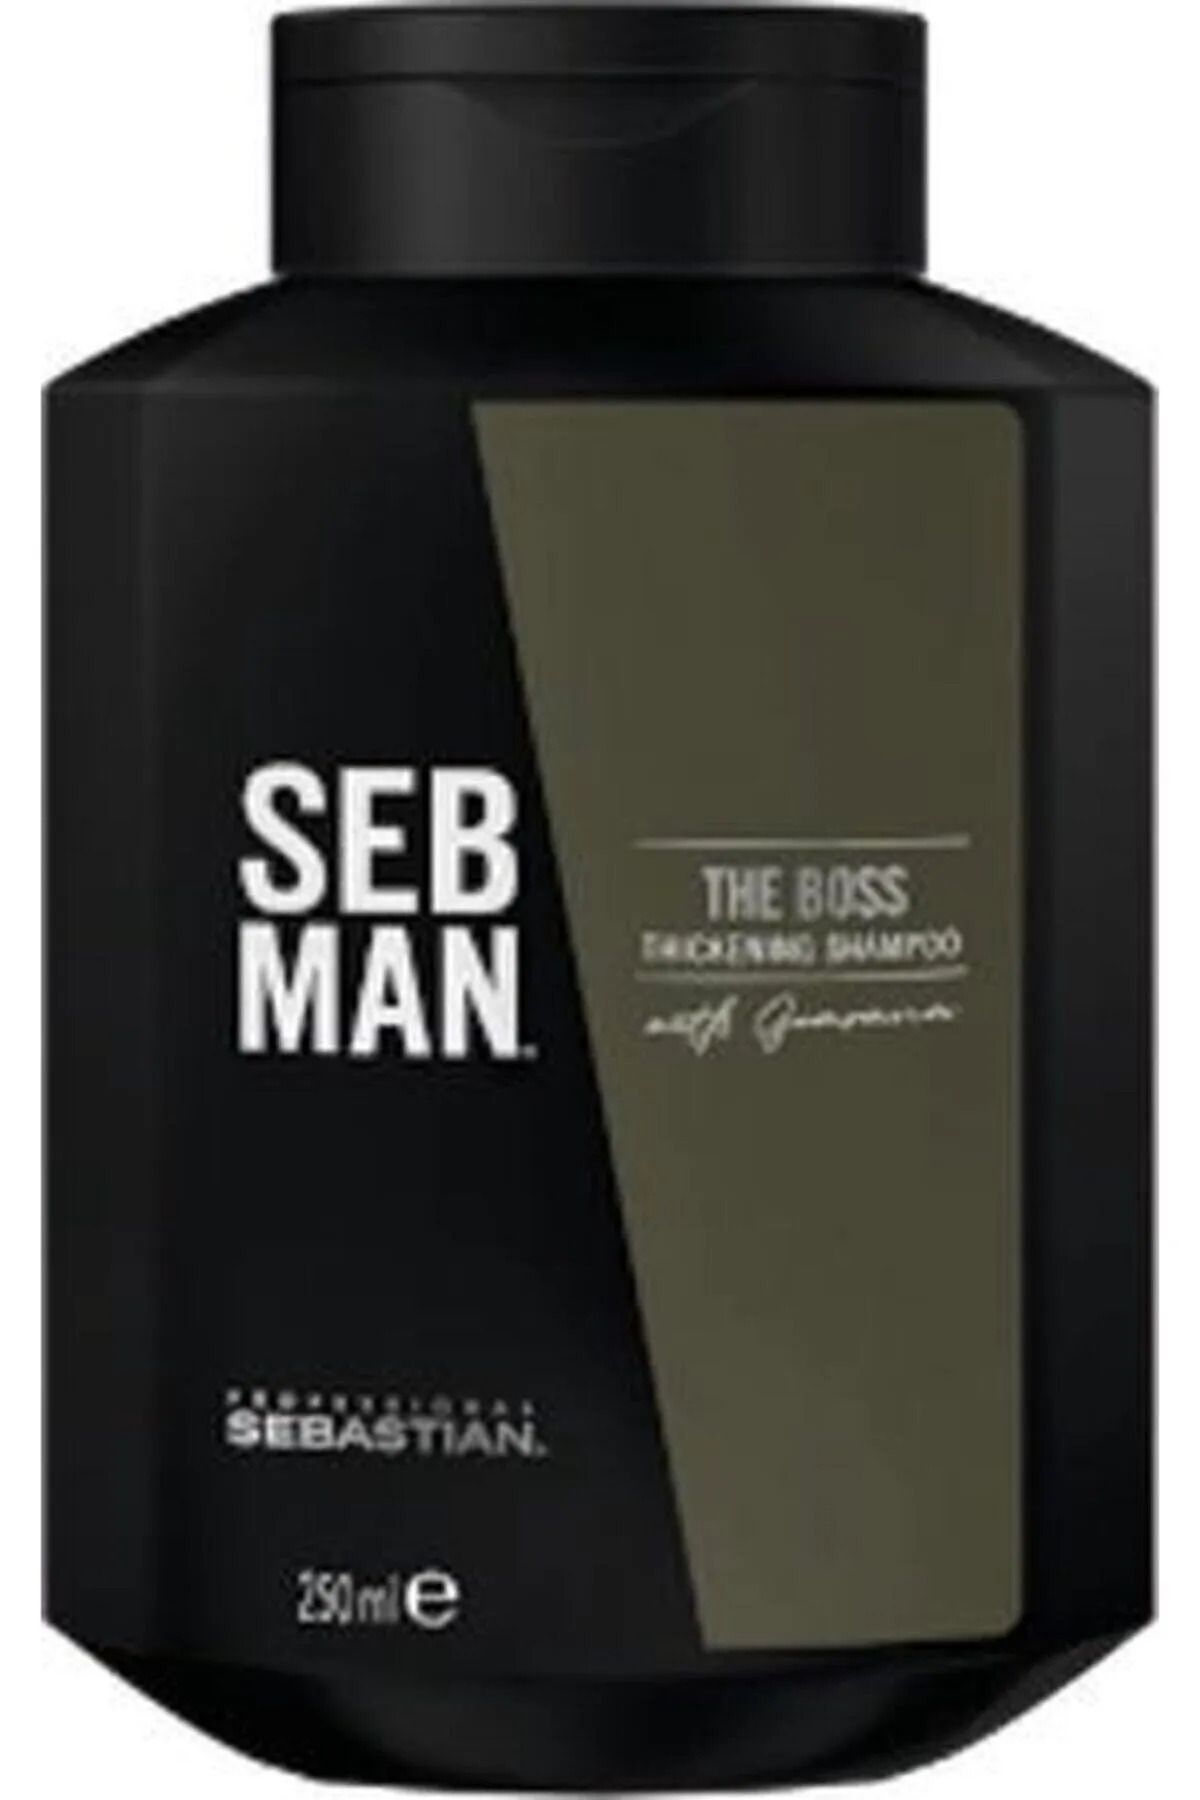 Sebastian Seb Man The Boss İnce Telli Saçlar İçin Dolgunlaştırıcı Şampuan 250 ml CYT7975559666655522